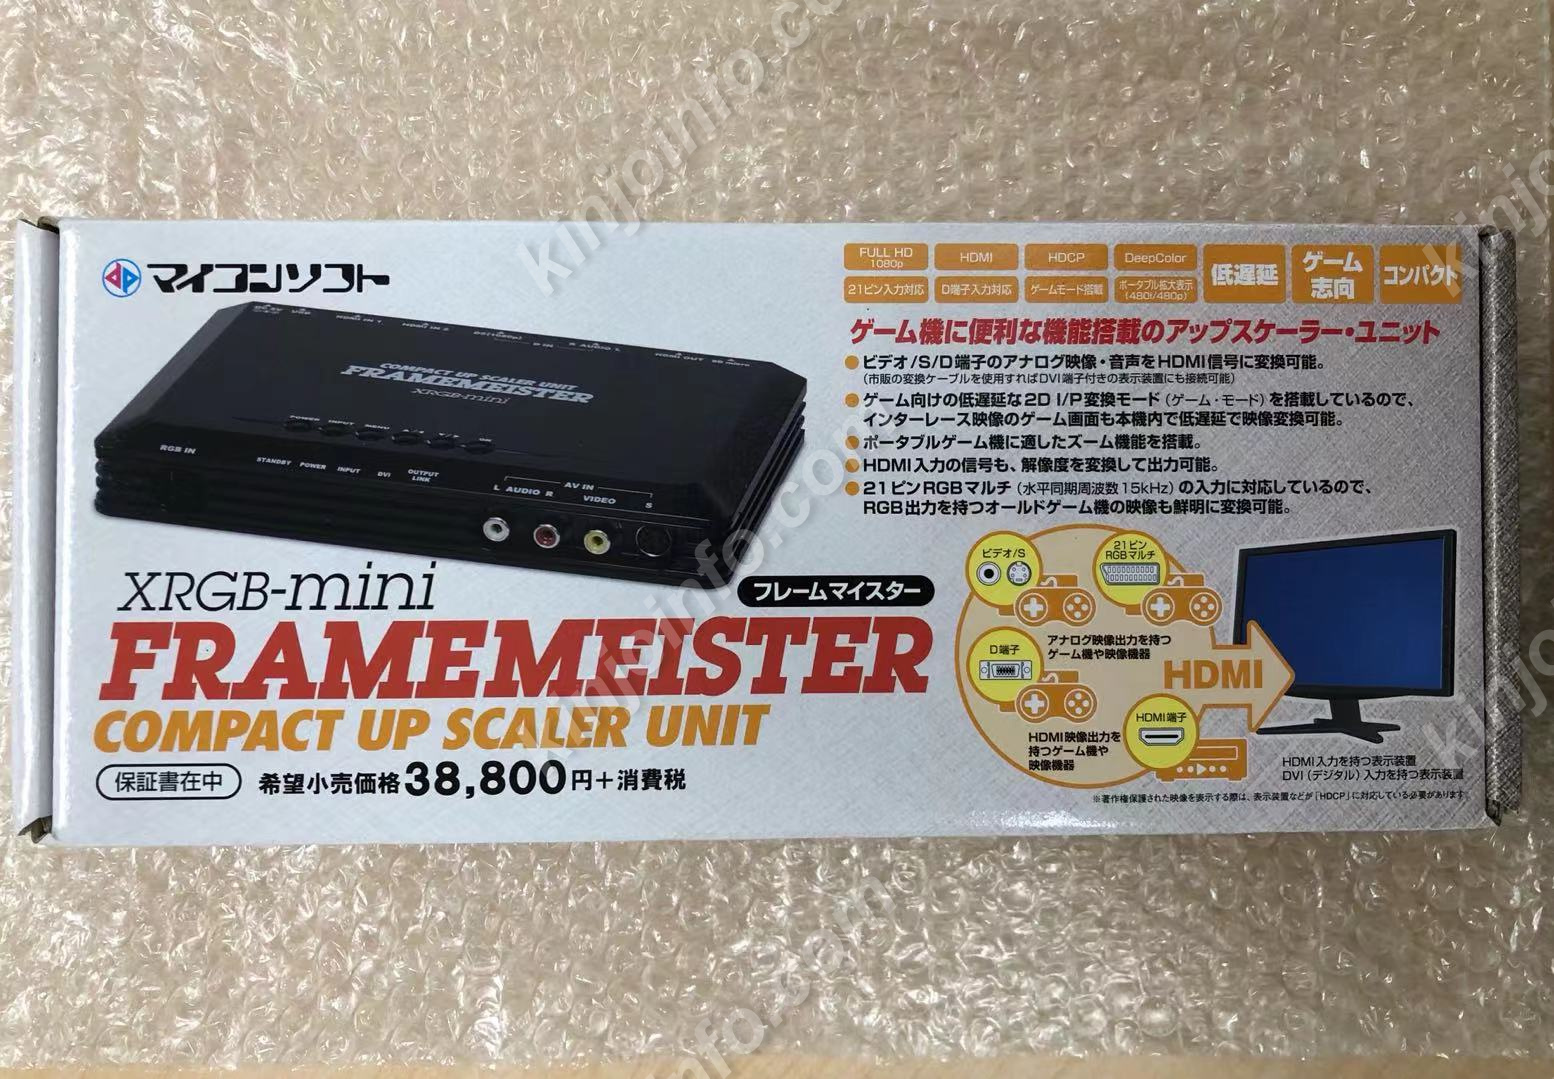 その他XRGB-mini FRAMEMEISTER フレームマイスター - mirabellor.com